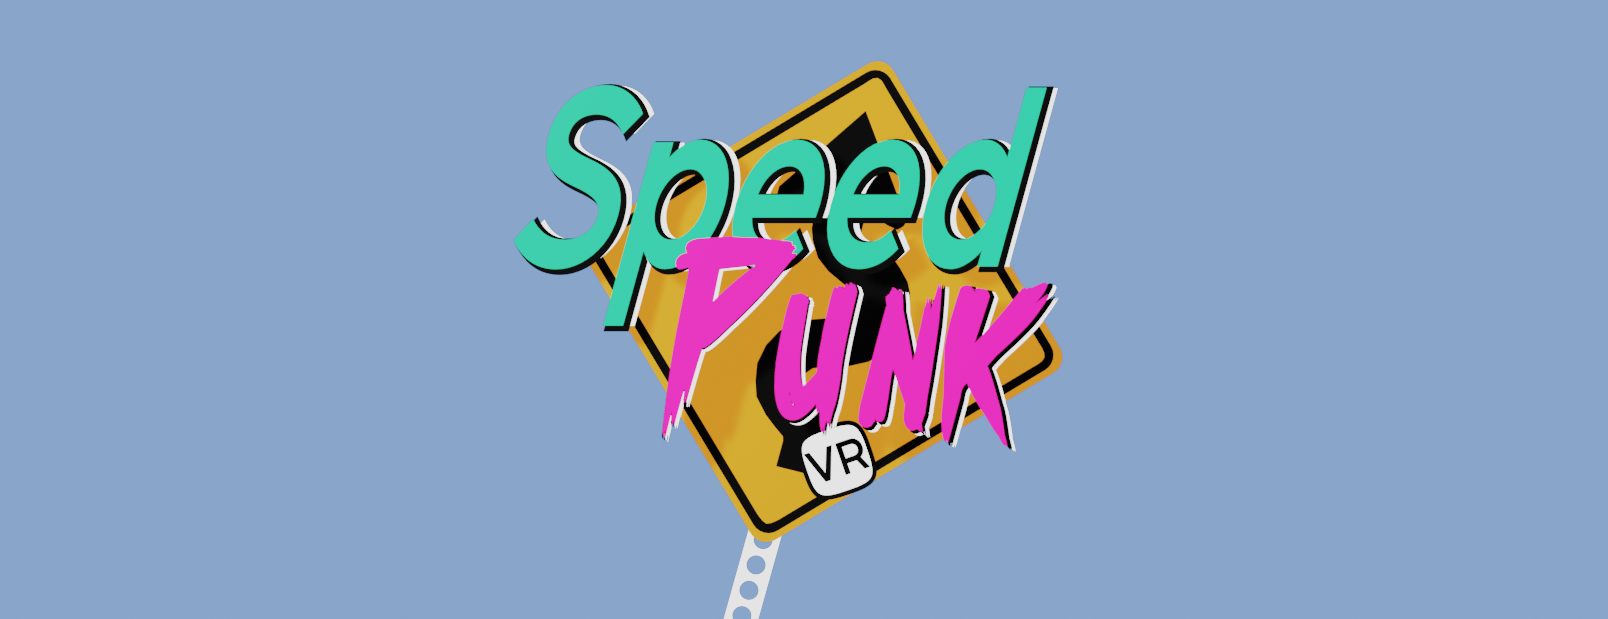 SpeedPunk VR